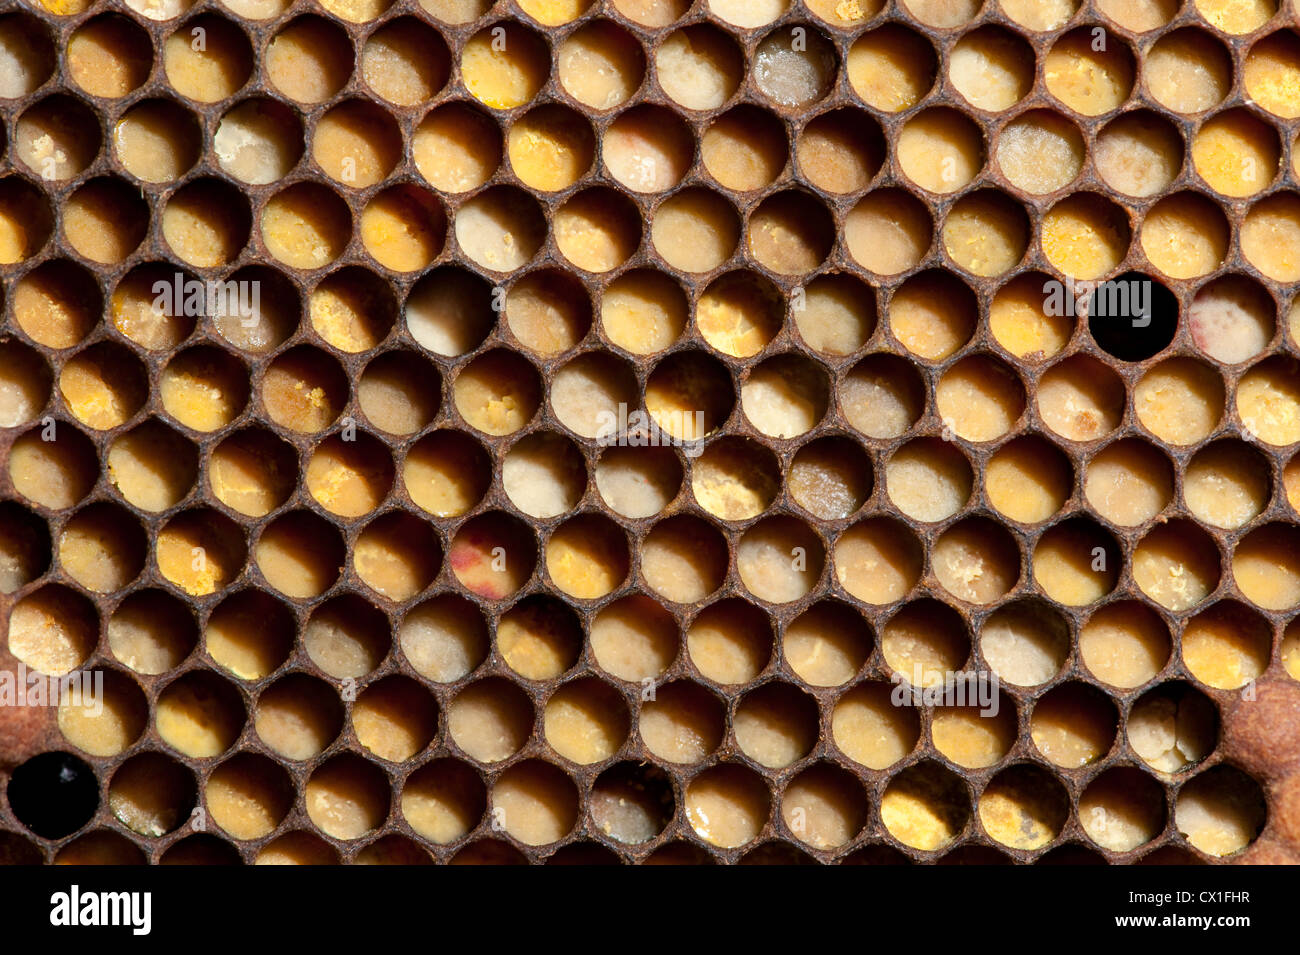 Les cellules de stockage de pollen d'abeille Apis mellifera Kent UK sur le châssis de la ruche Banque D'Images